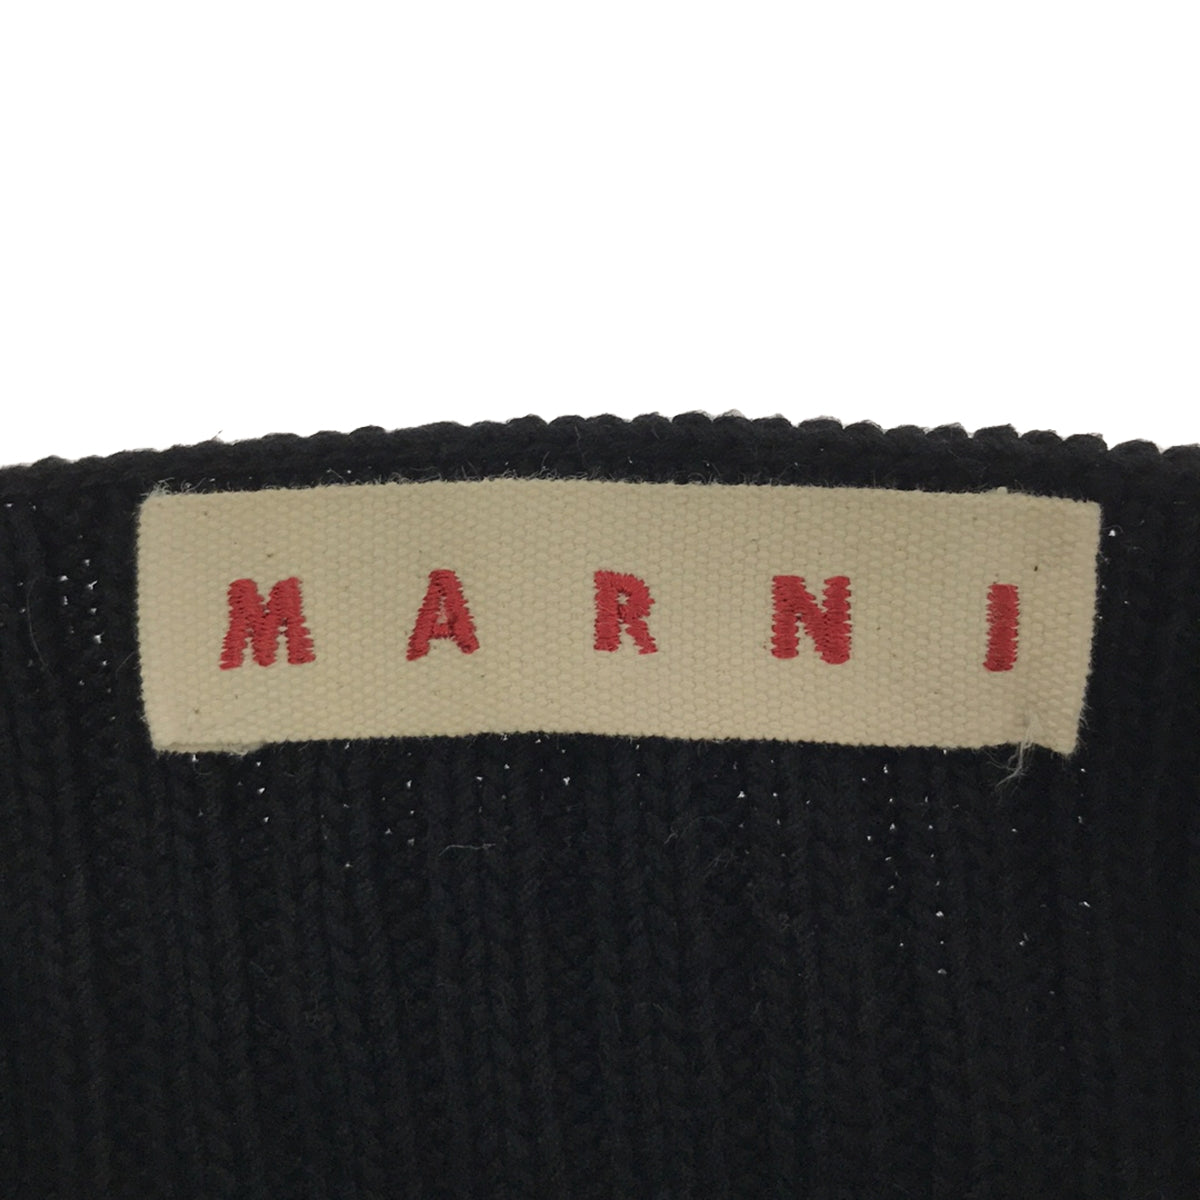 MARNI / マルニ | ノースリーブ リブニットベスト | 38 | レディース